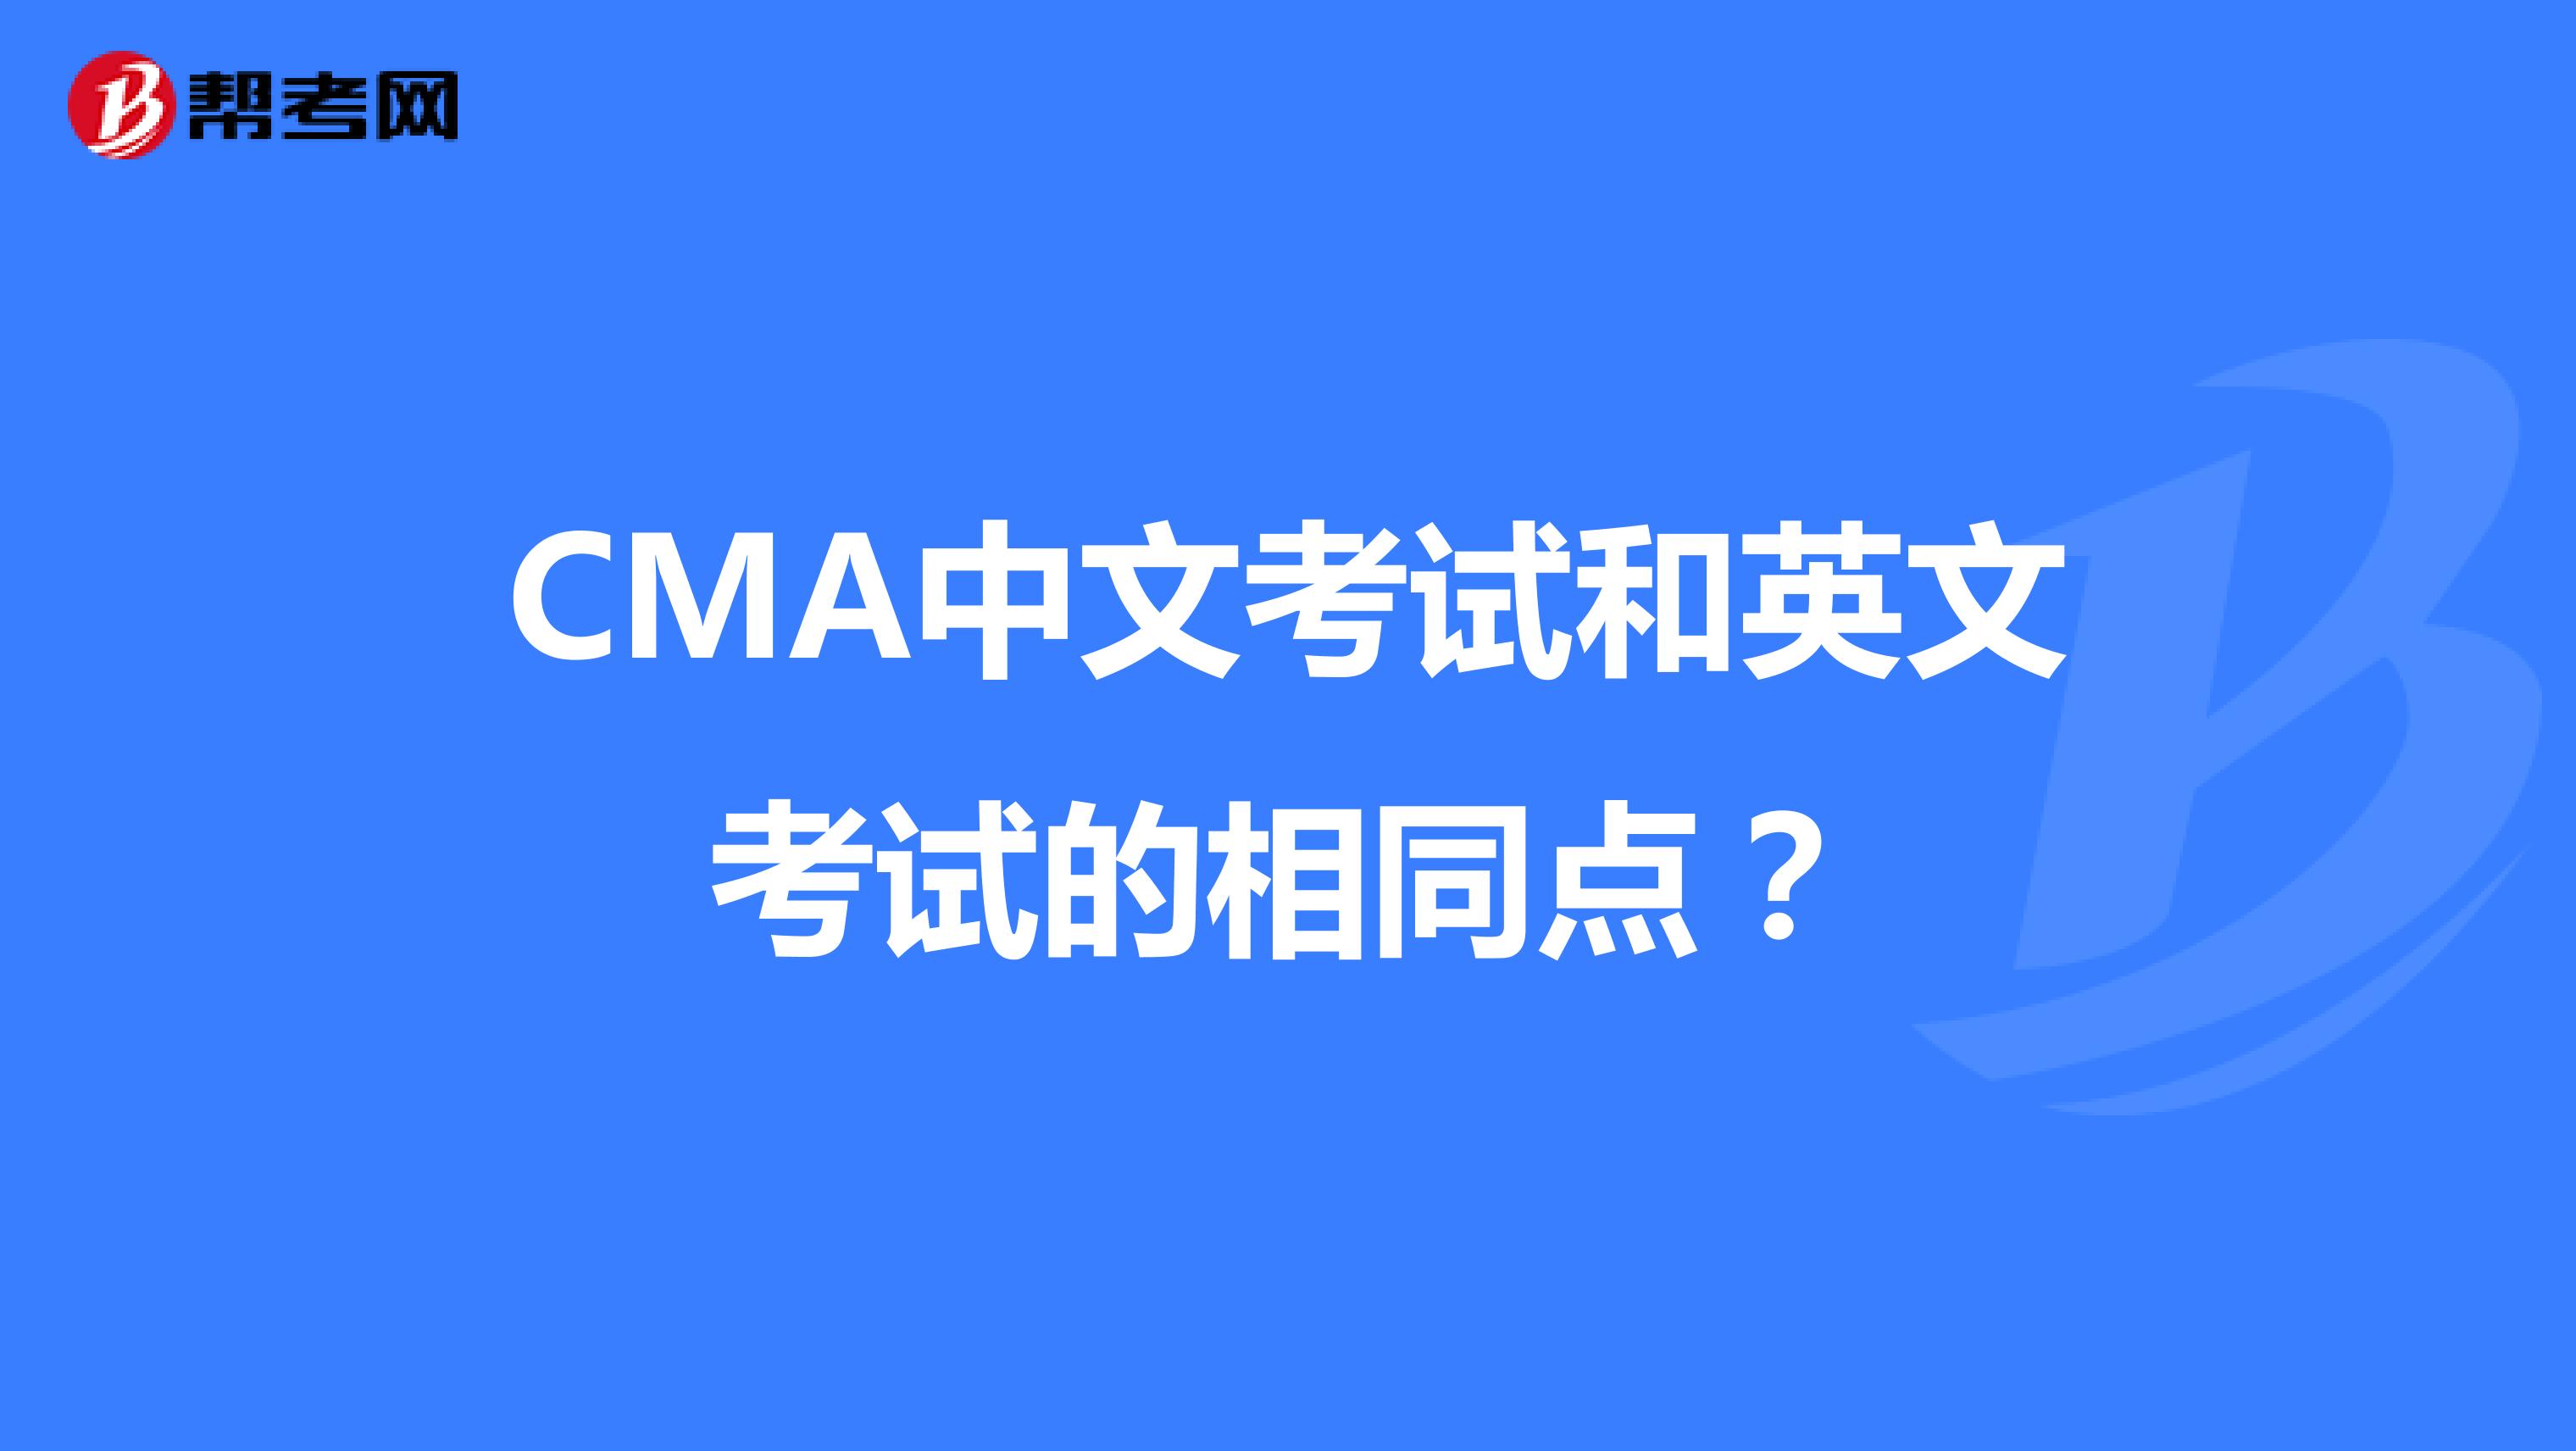 CMA中文考试和英文考试的相同点？